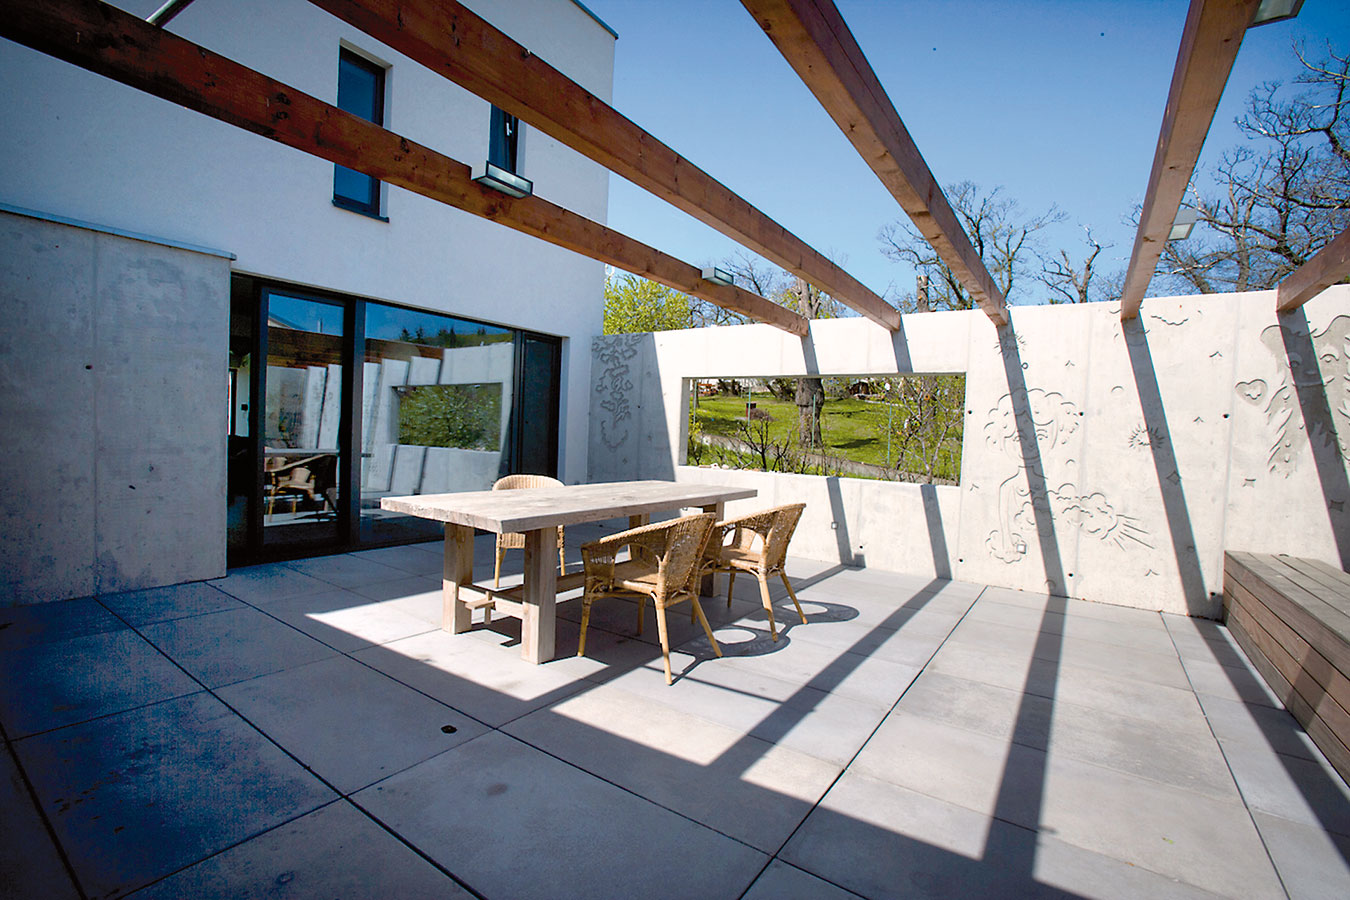 Severní terasa či spíše patio chráněné stěnami z grafického betonu poskytuje v létě příjemný stín. Dřevěná konstrukce nad terasou je naplánována jako opora pro vistárii, která tu časem vytvoří ještě příjemnější mikroklima. Foto ITB Development